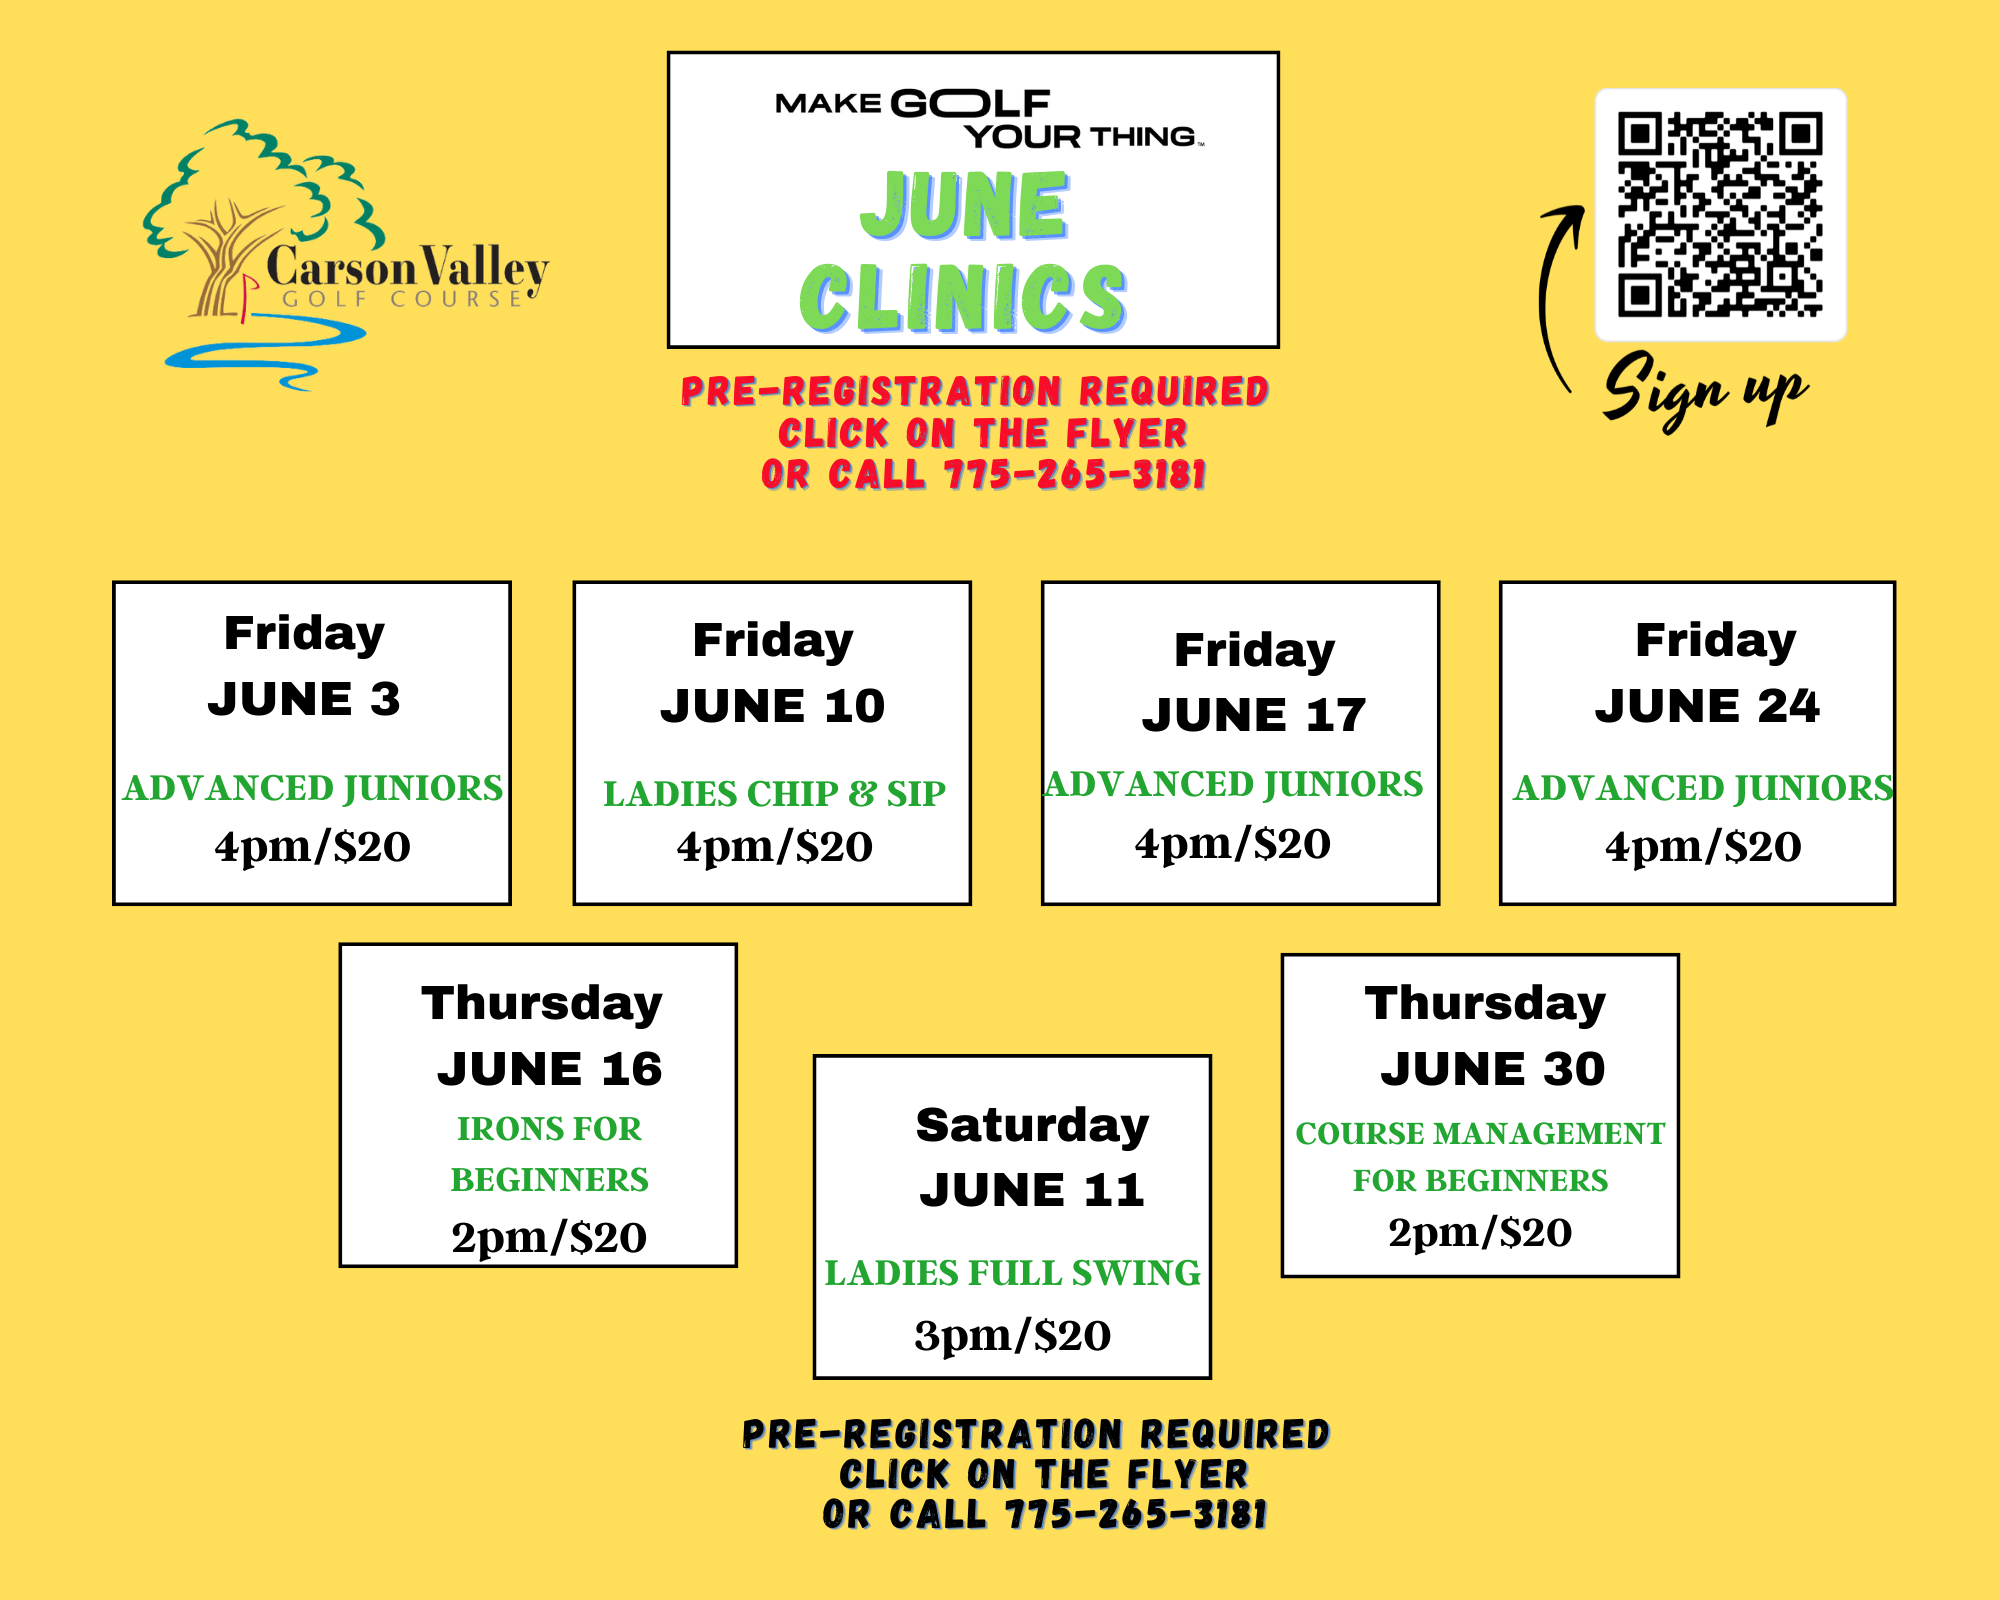 June Clinics